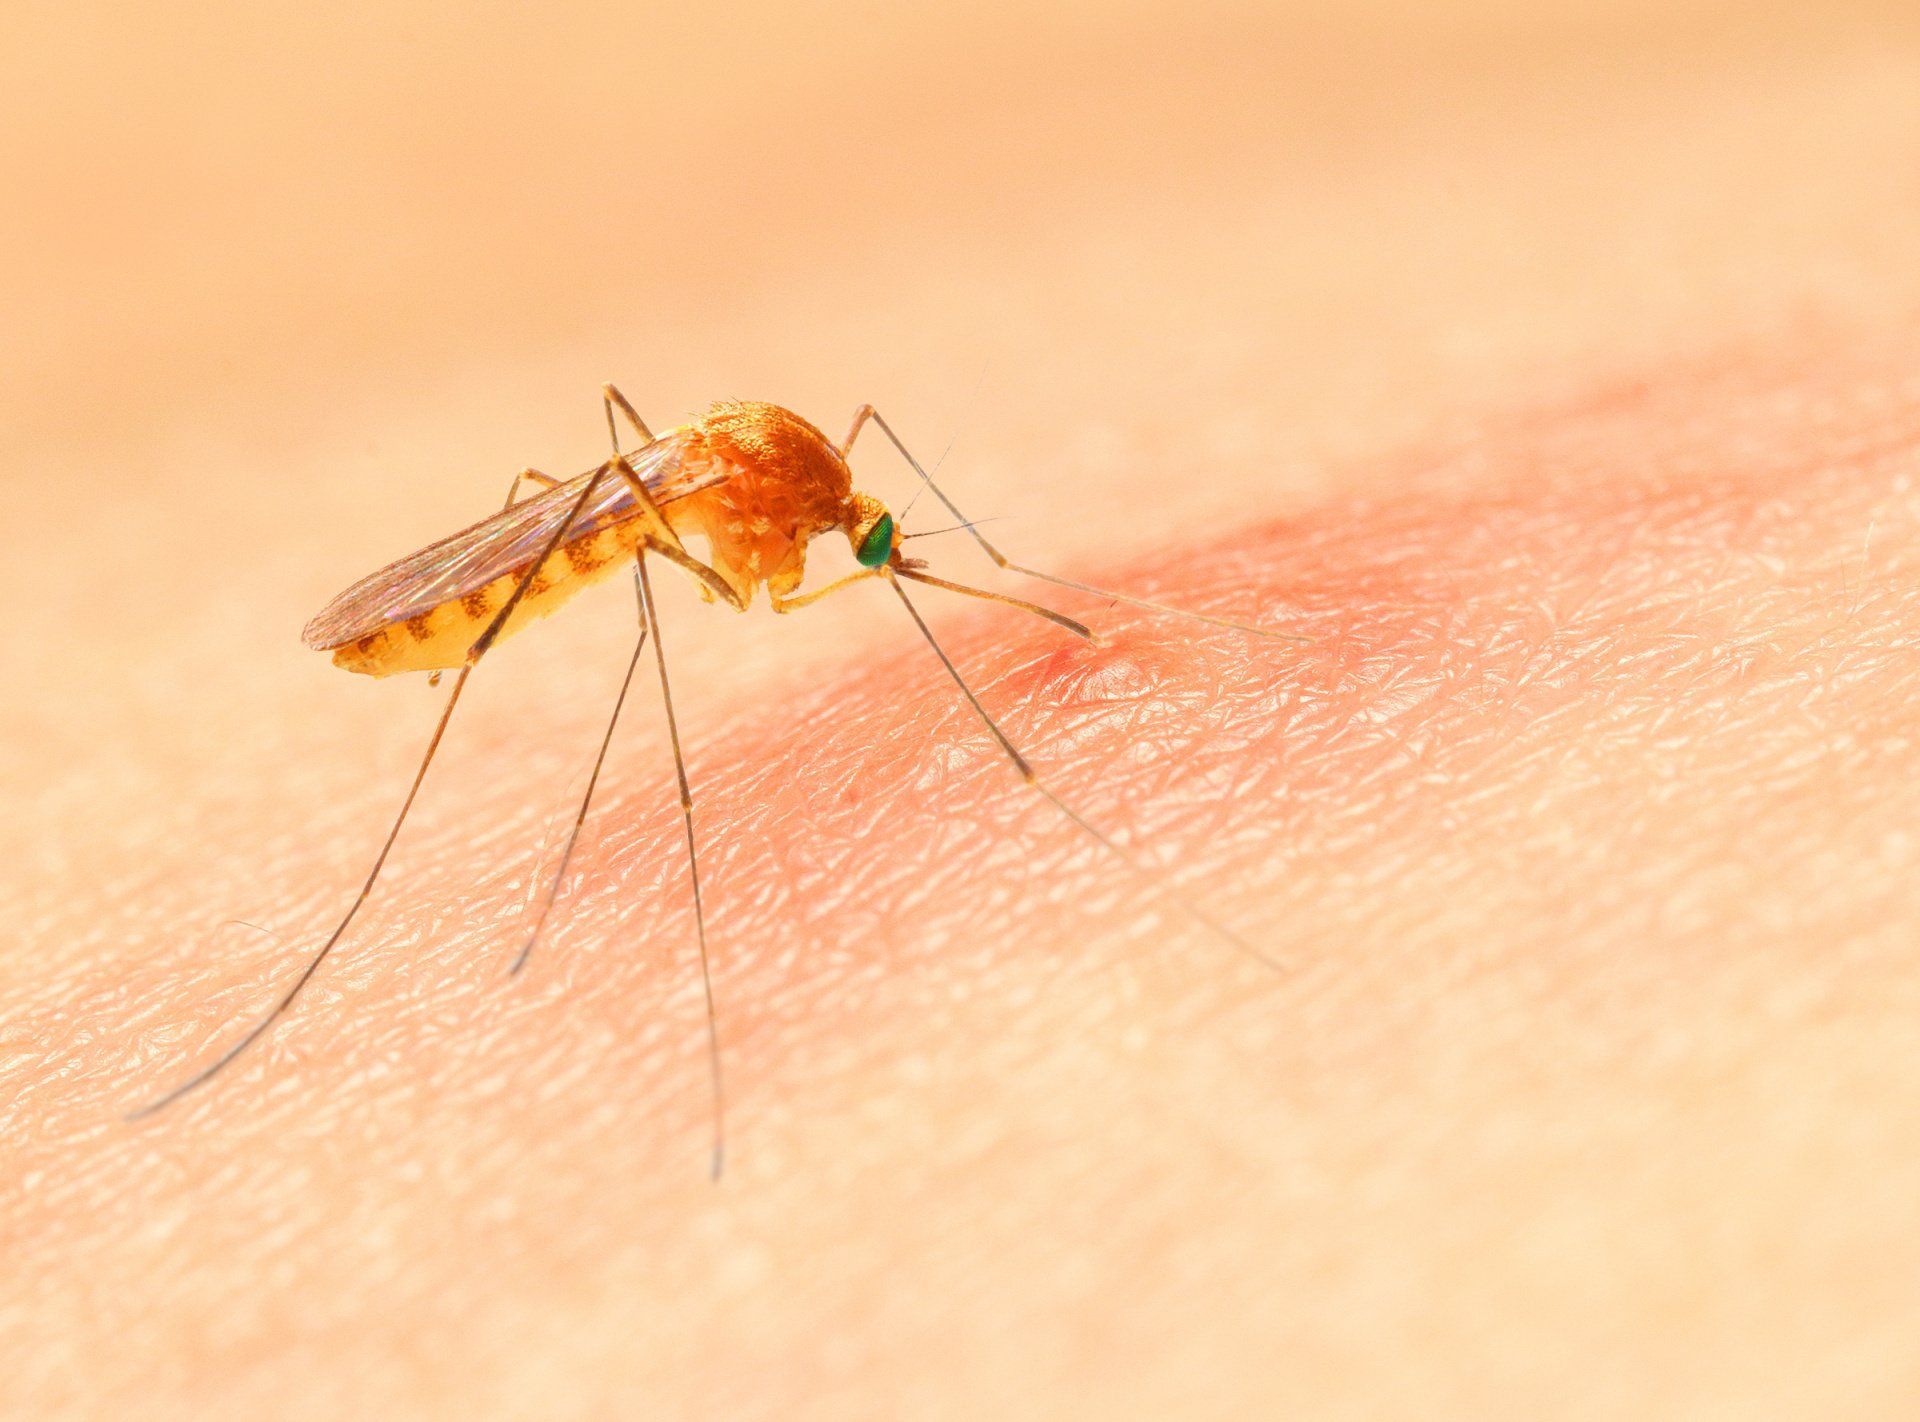 Малярия укусы комаров. Укус малярии малярийный комар. Комар желтолихорадочный укус. Укус комара под микроскопом.